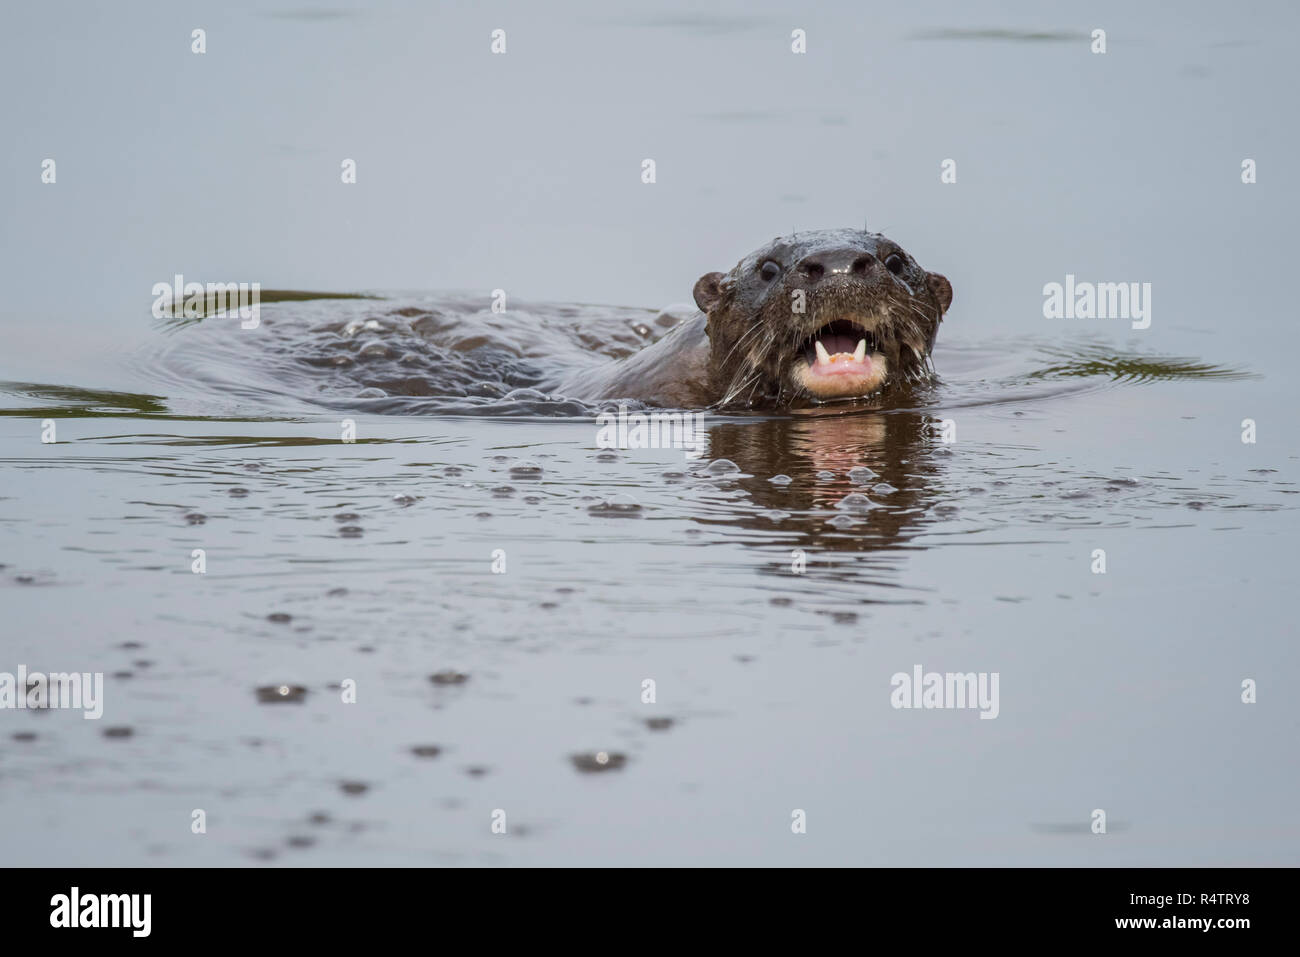 La loutre néotropicale (Lontra longicaudis), natation dans l'eau, Pantanal, Mato Grosso do Sul, Brésil Banque D'Images